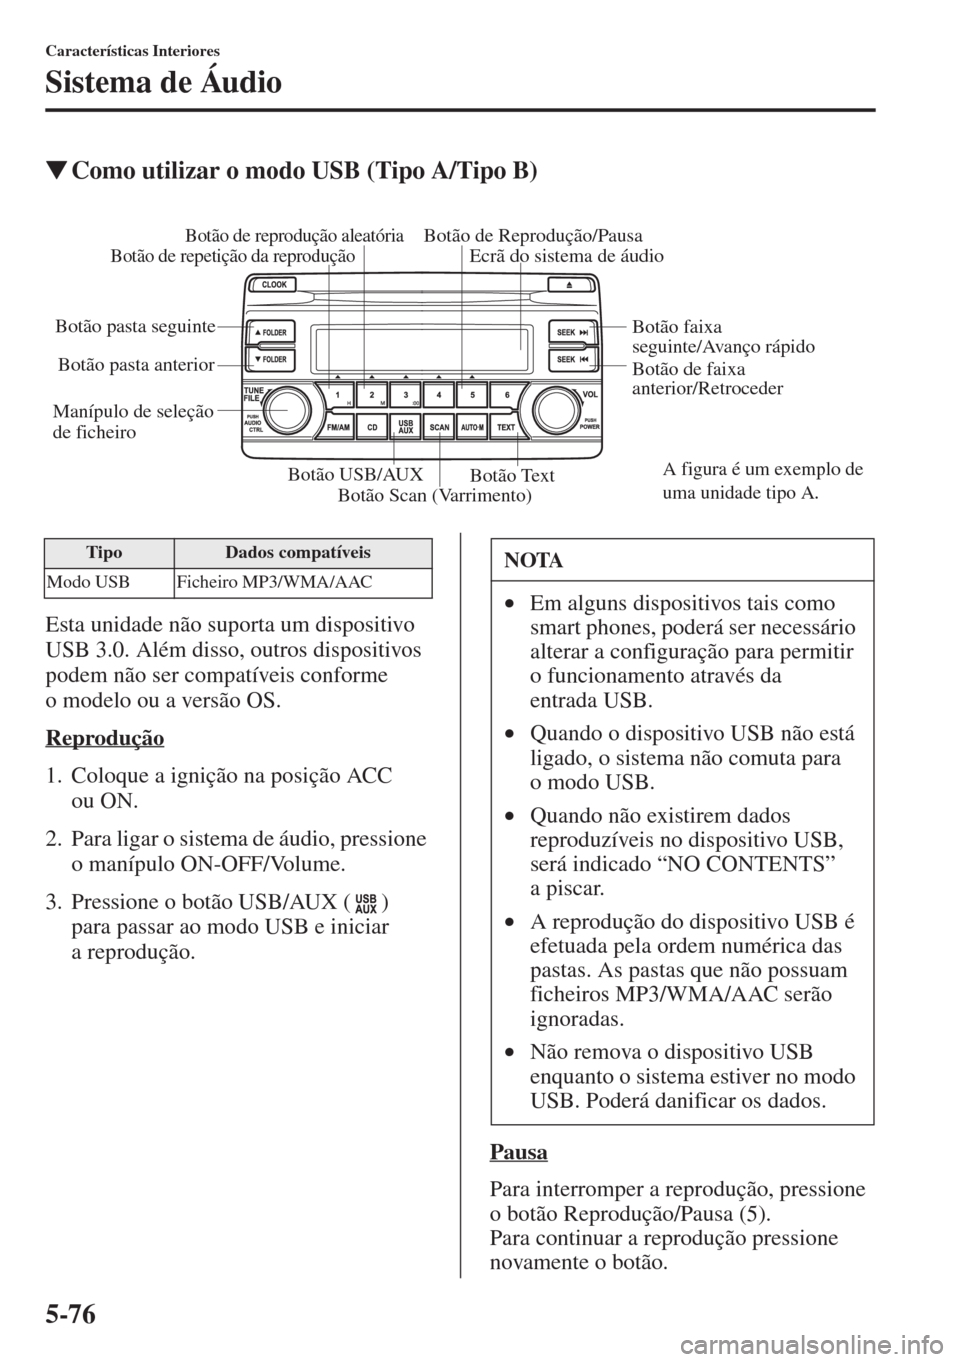 MAZDA MODEL CX-5 2015  Manual do proprietário (in Portuguese) 5-76
Características Interiores
Sistema de Áudio
�WComo utilizar o modo USB (Tipo A/Tipo B)
Esta unidade não suporta um dispositivo 
USB 3.0. Além disso, outros dispositivos 
podem não ser compat